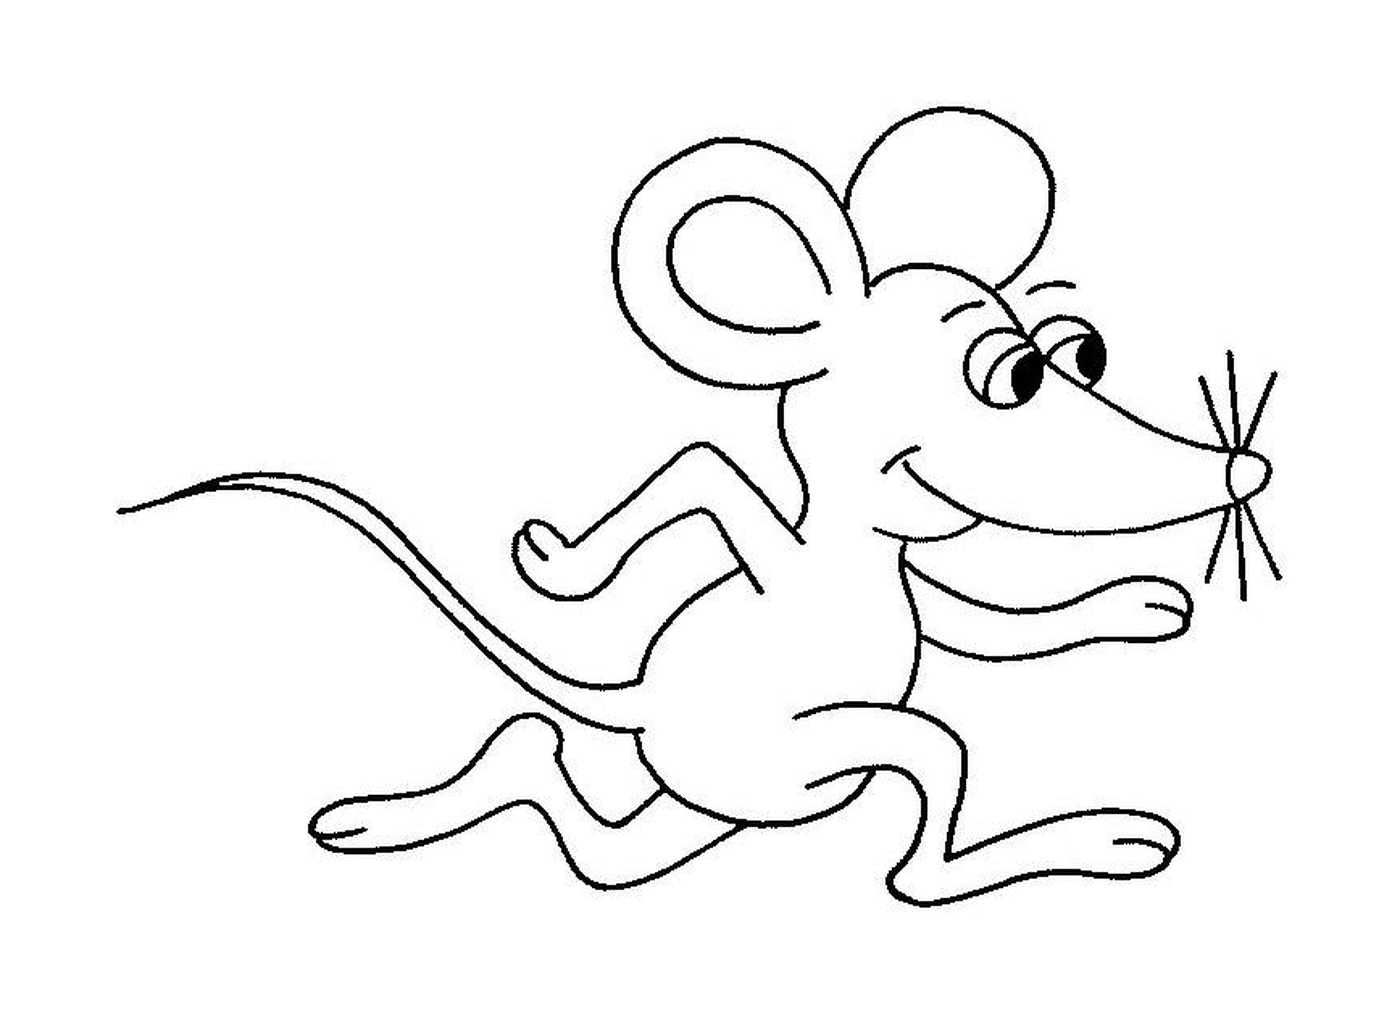  Un ratón que corre 